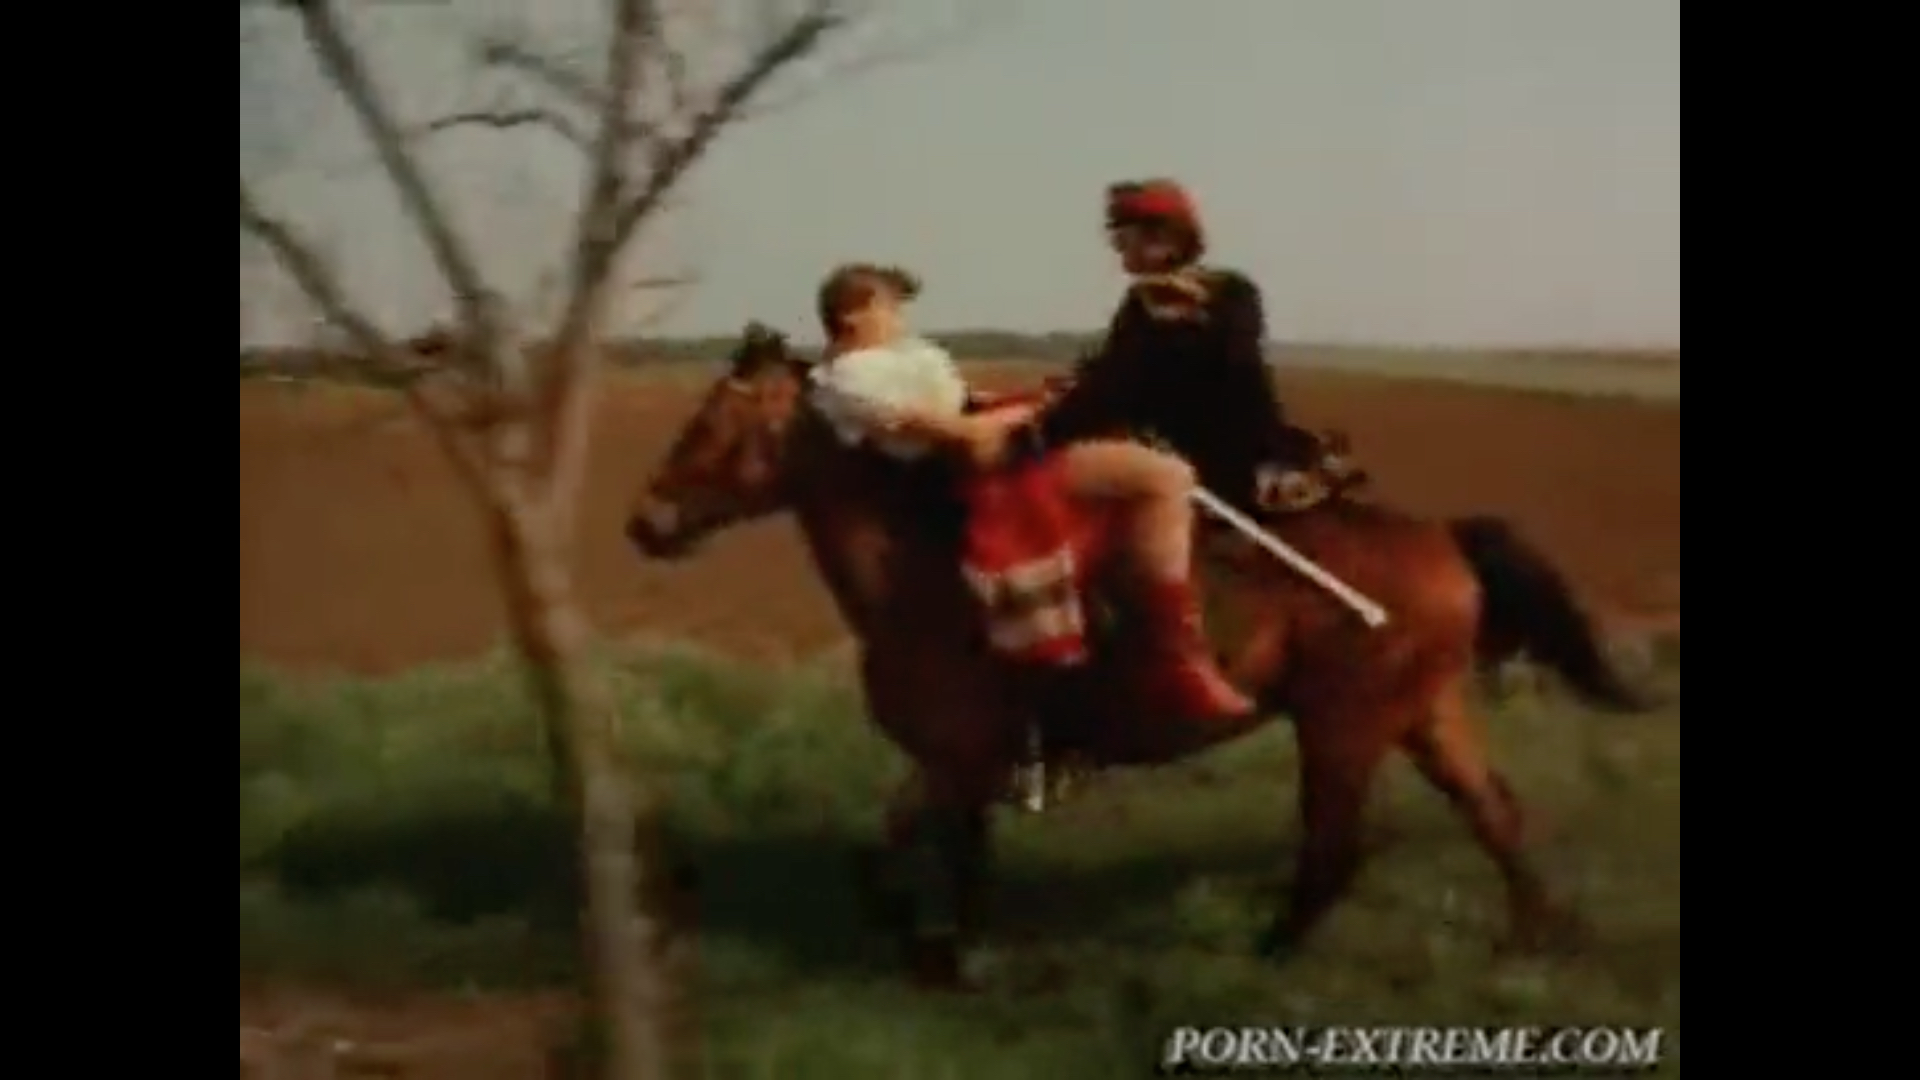 Xxx Horse Sex Chudai - Sex on a running horse! - ThisVid.com